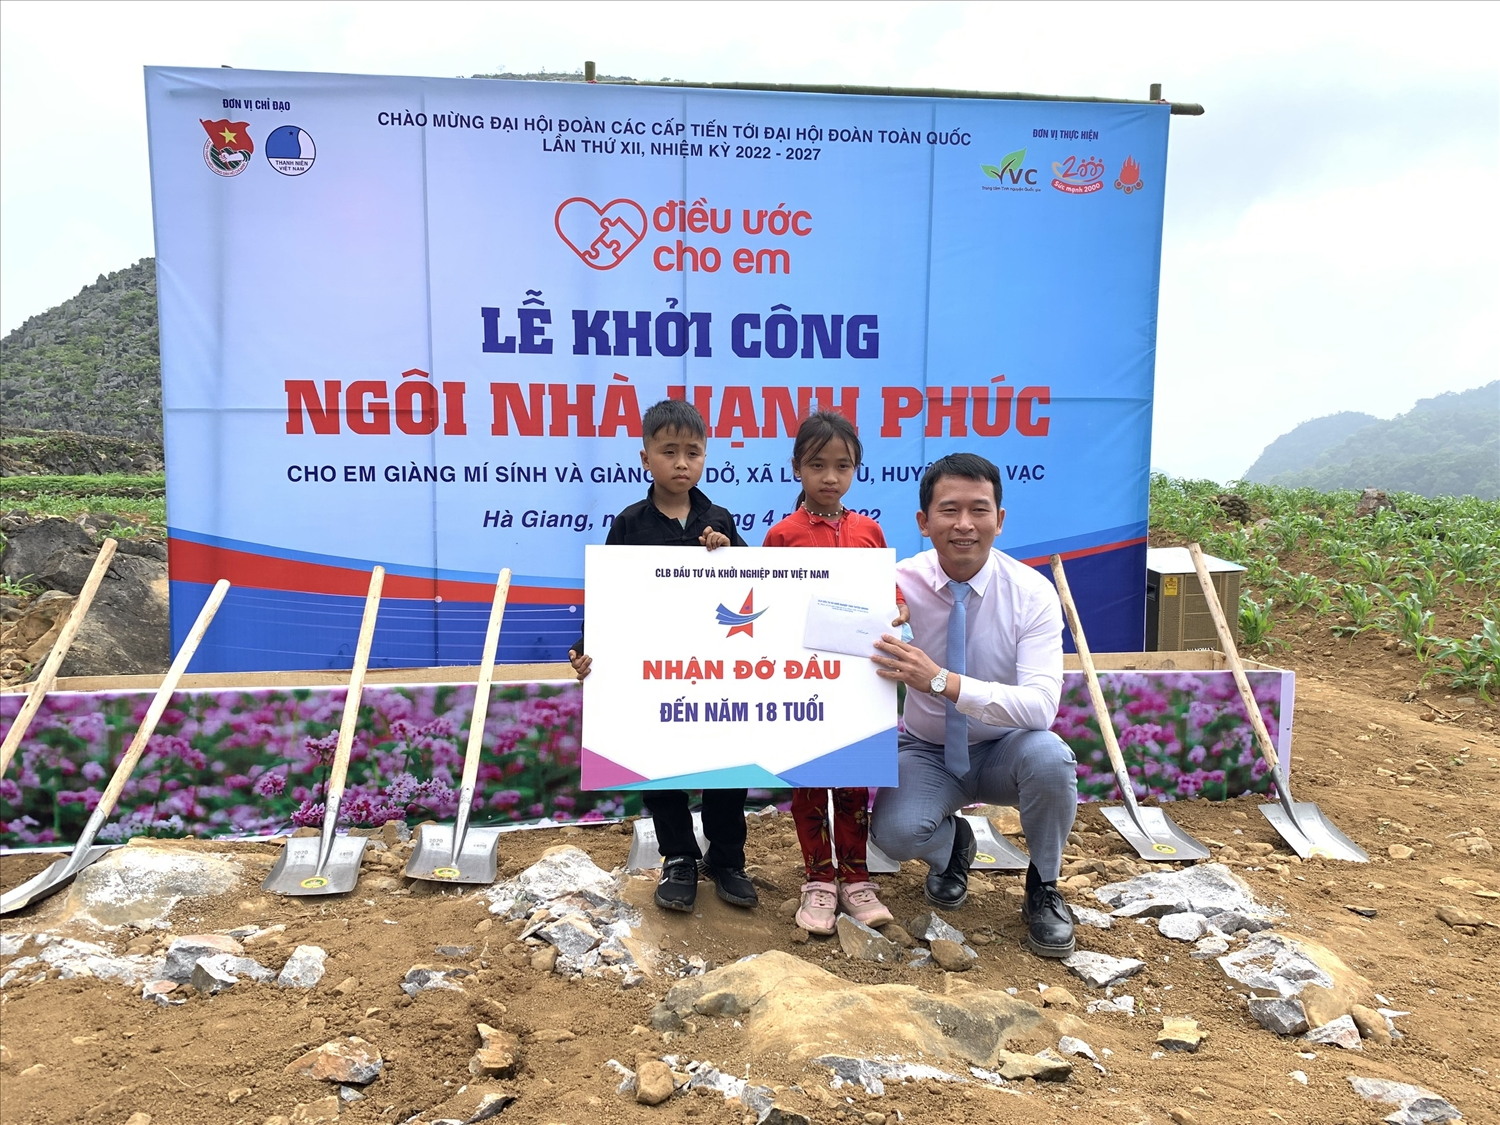 Đại diện Câu lạc bộ Đầu tư và khởi nghiệp Doanh nhân trẻ Việt Nam trao hỗ trợ kinh phí đến năm 18 tuổi cho 2 em (500 nghìn/tháng/em)